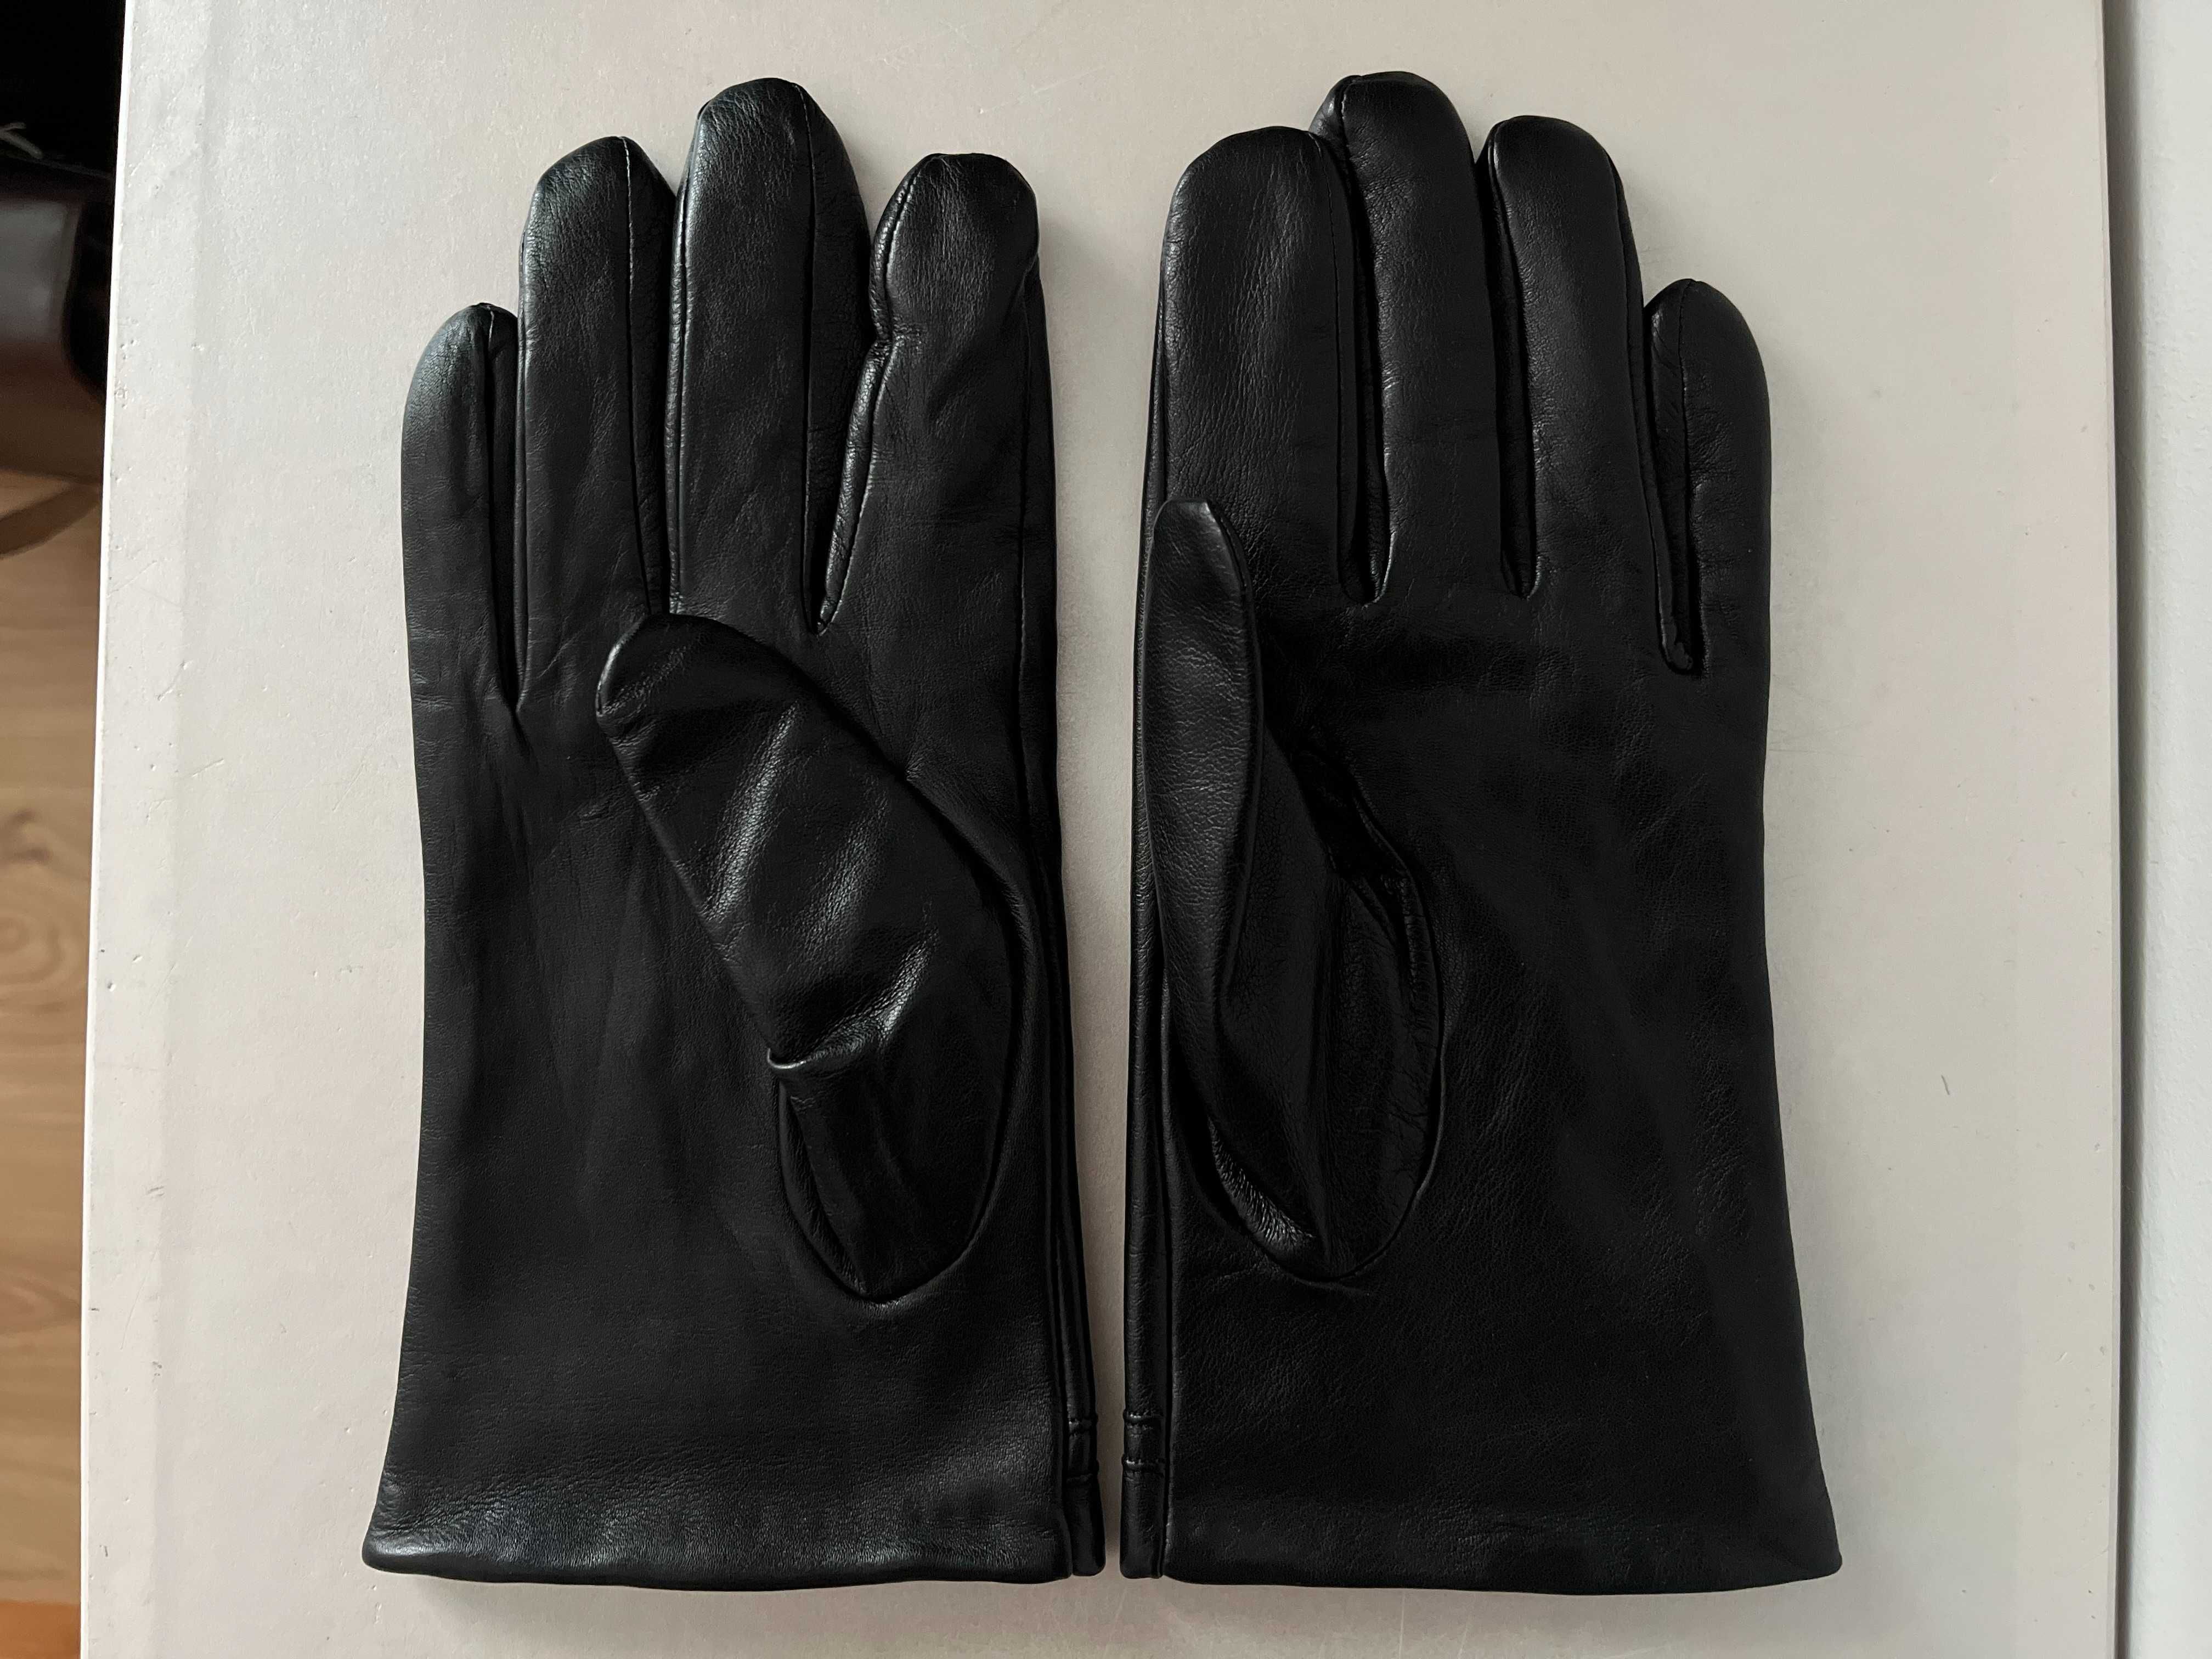 Rękawiczki Wittchen rozmiar XL